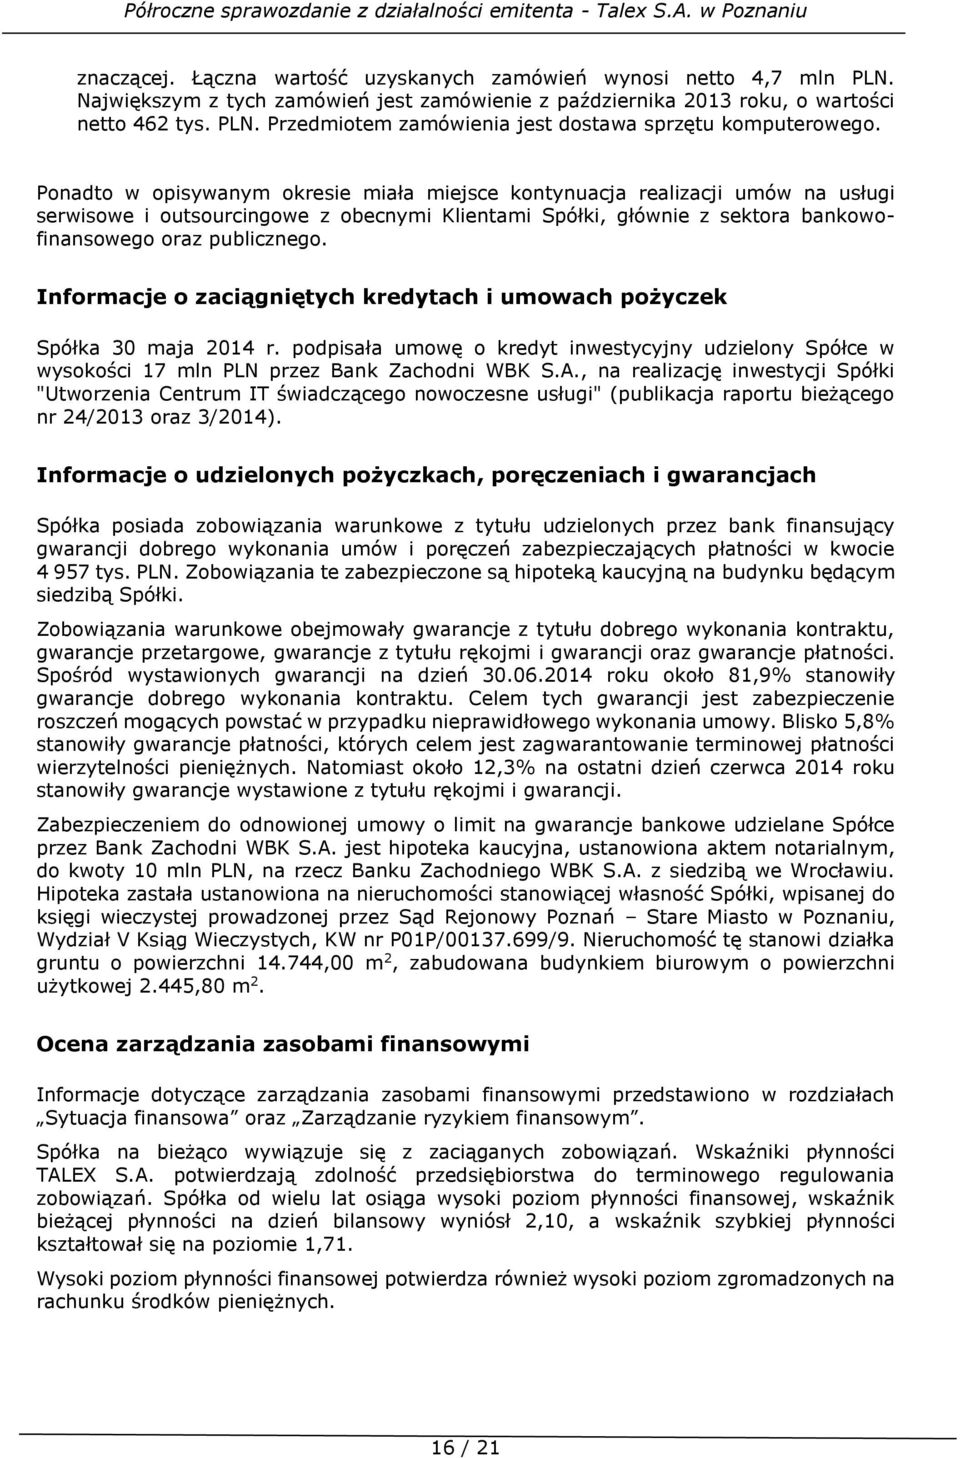 Informacje o zaciągniętych kredytach i umowach pożyczek Spółka 30 maja 2014 r. podpisała umowę o kredyt inwestycyjny udzielony Spółce w wysokości 17 mln PLN przez Bank Zachodni WBK S.A.